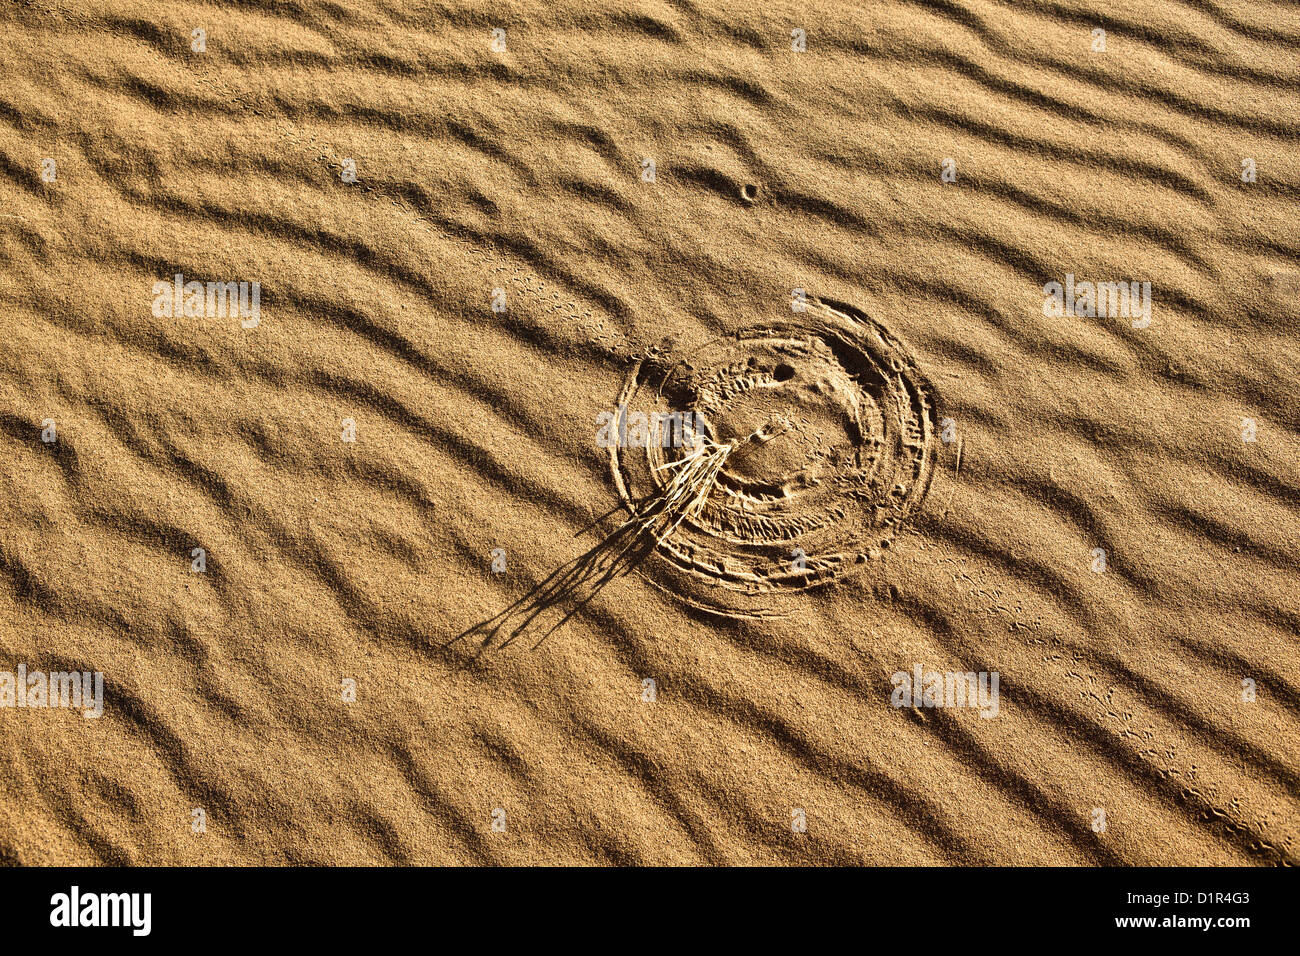 Le Maroc, M'Hamid, Erg Chigaga dunes de sable. Désert du Sahara. Détail des marques d'ondulation. Peu de marques de Bush dans le sable à cause du vent. Banque D'Images